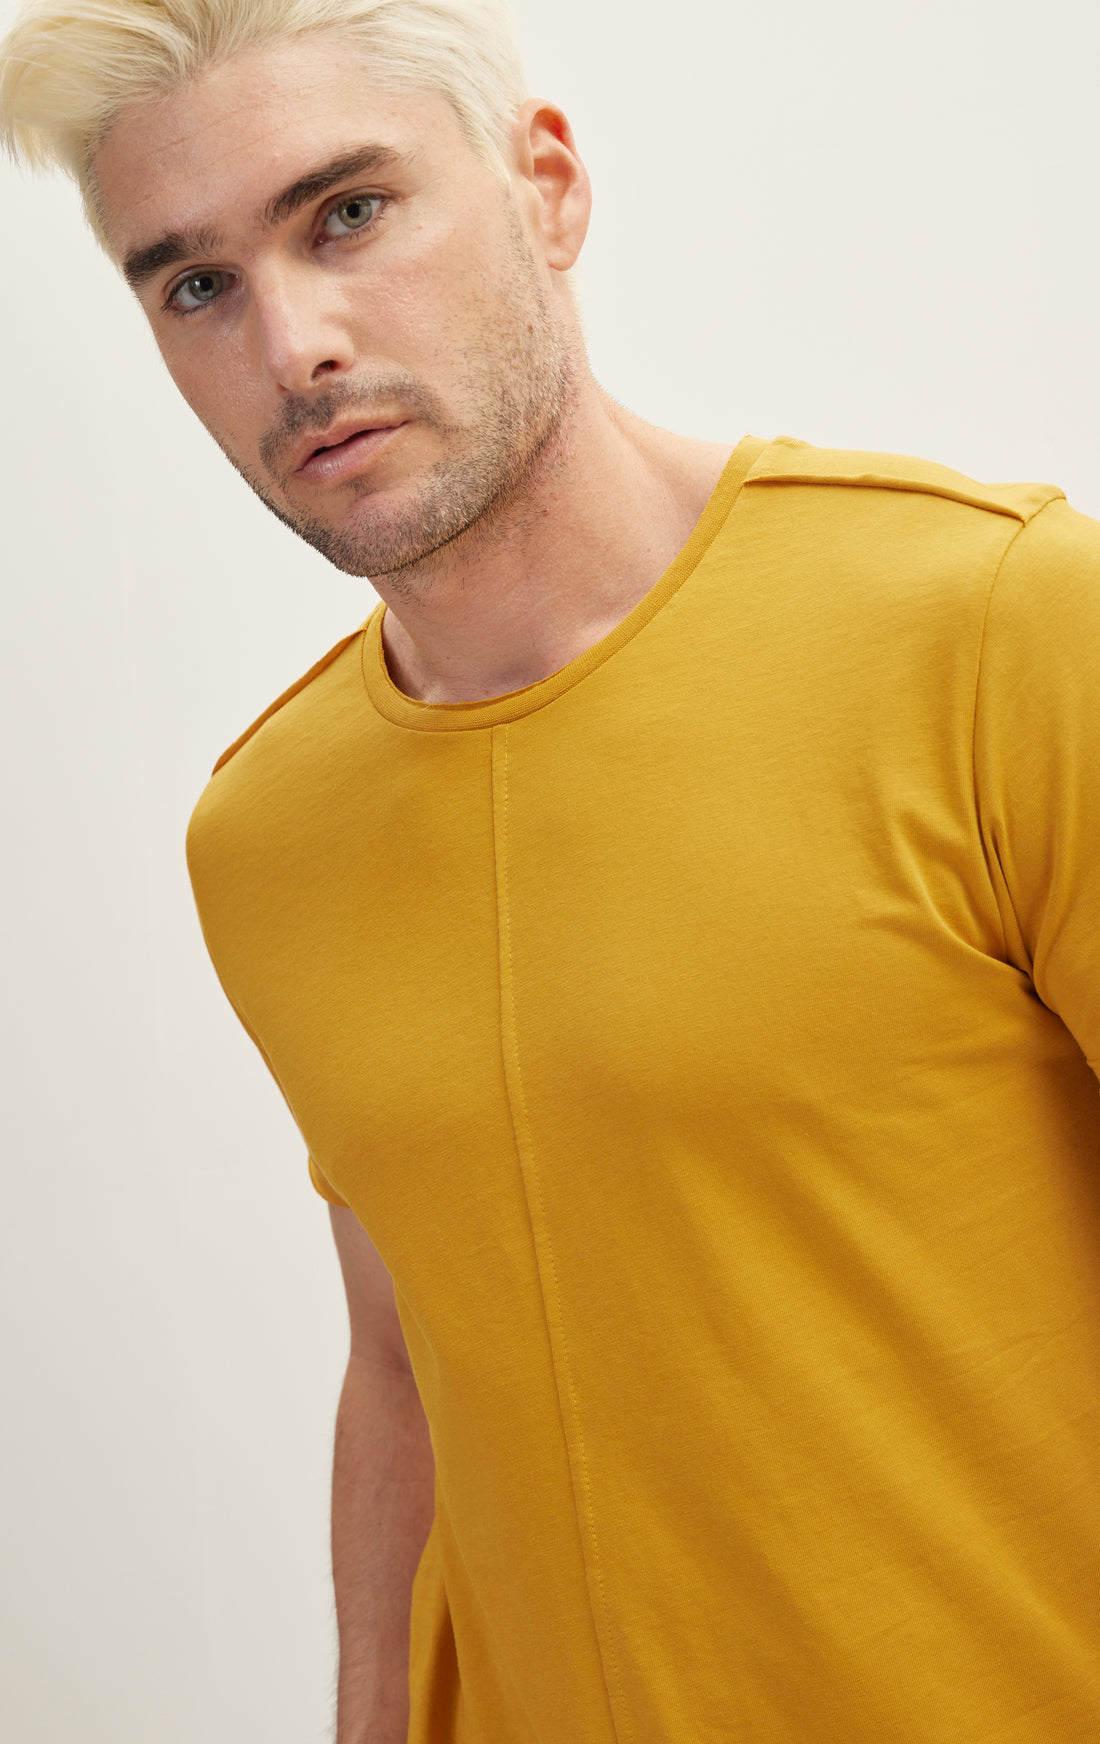 Asymmetric Cut T-Shirt - Golden Yellow